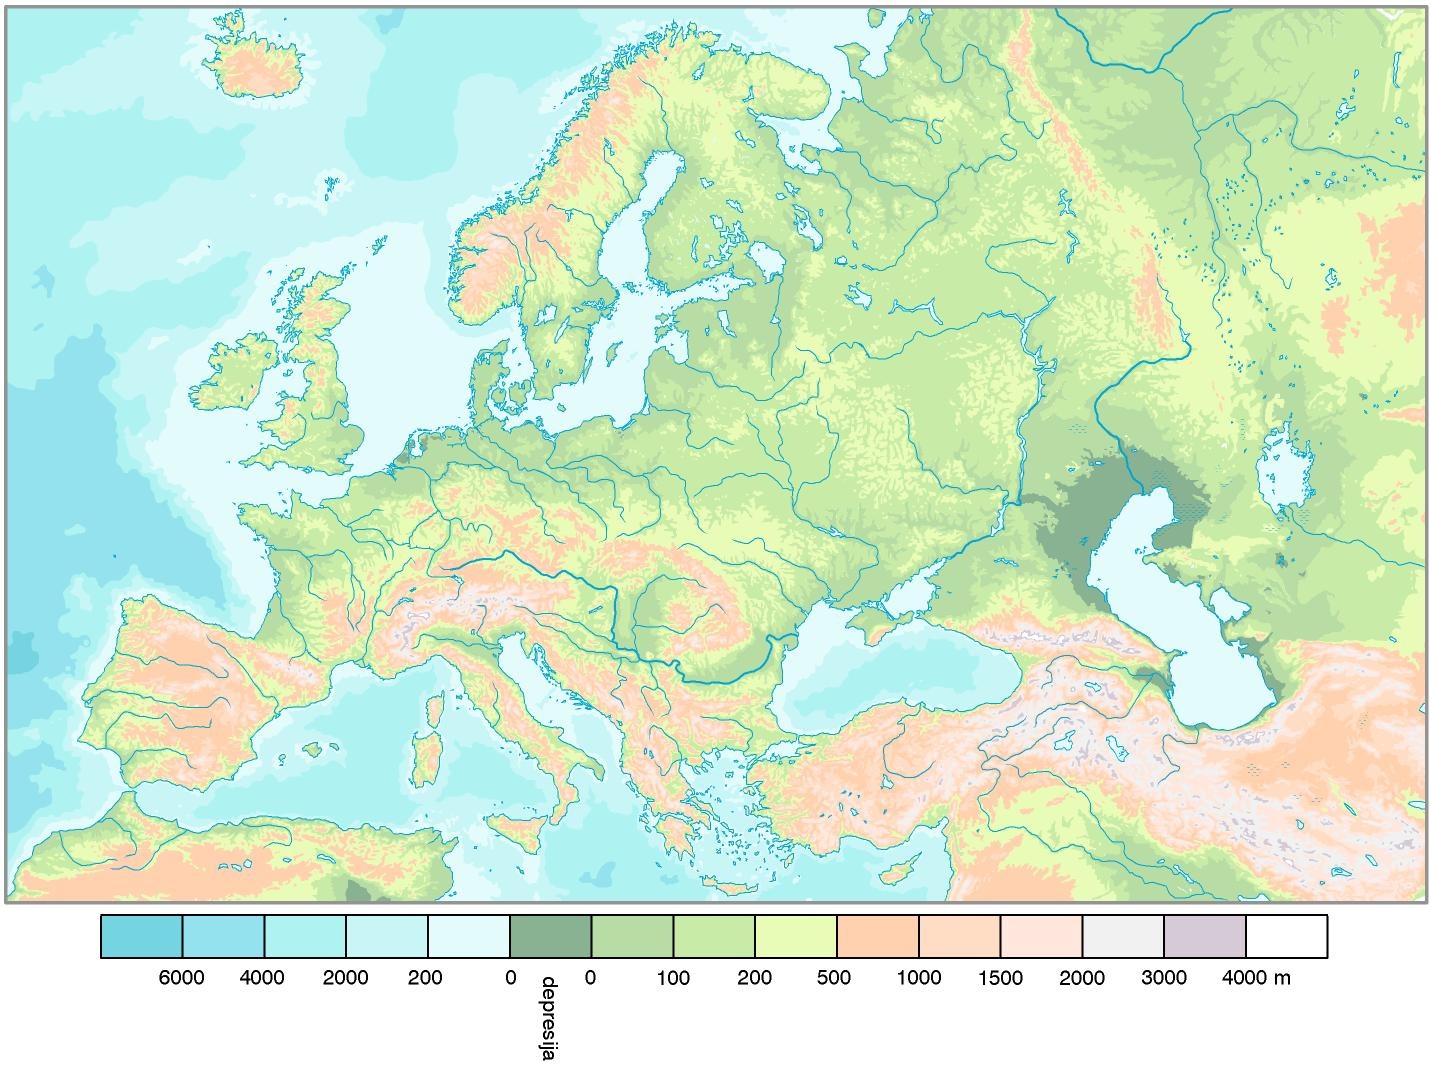 Реки европы. Карта рельефа Европы. Карта рек Европы. Физическая карта зарубежной Европы.